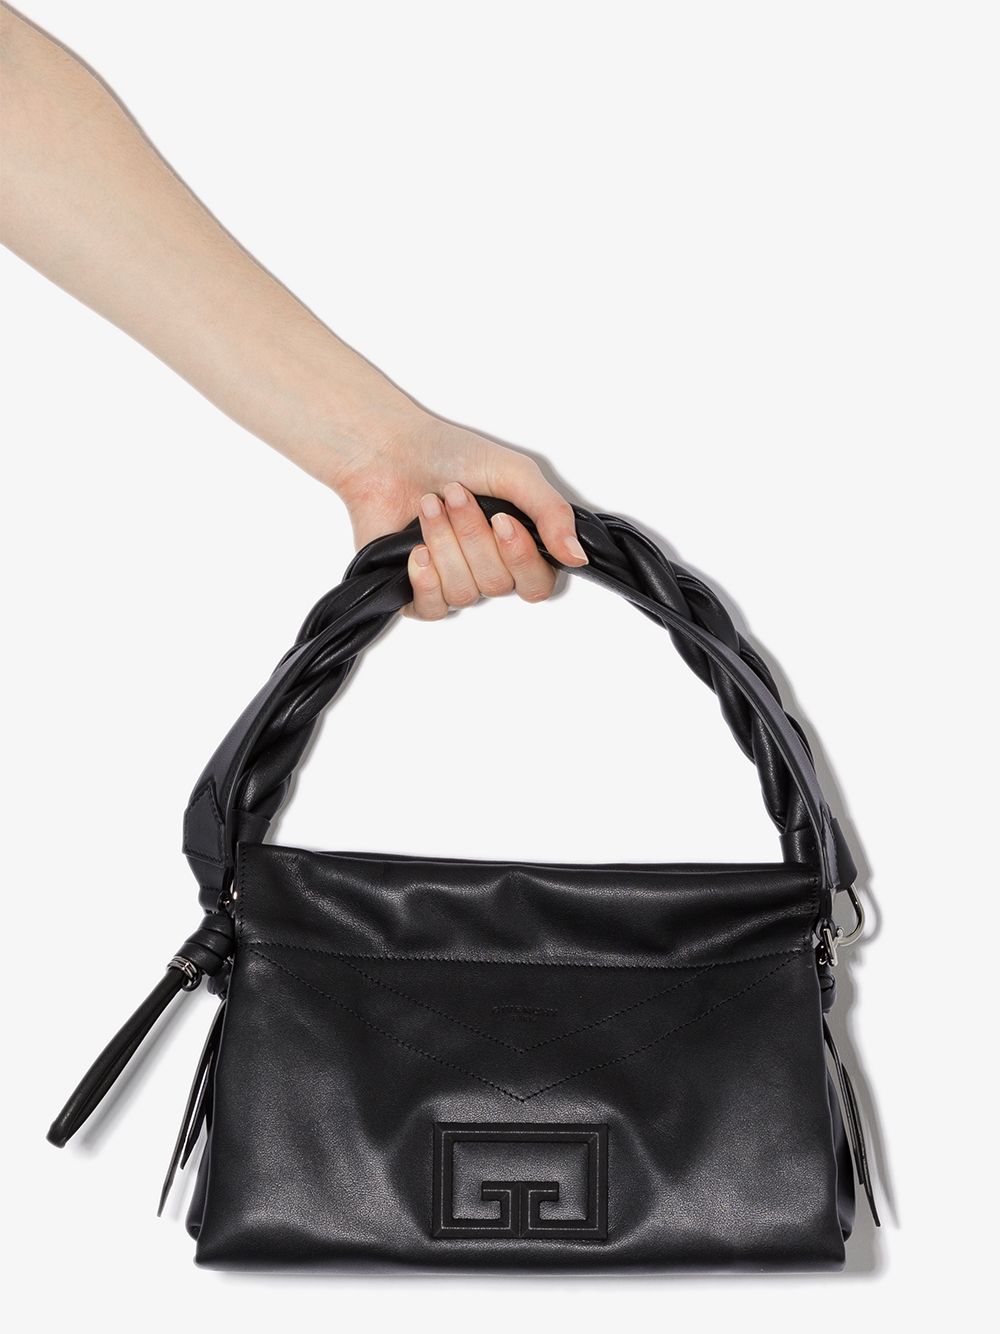 фото Givenchy сумка на плечо id93